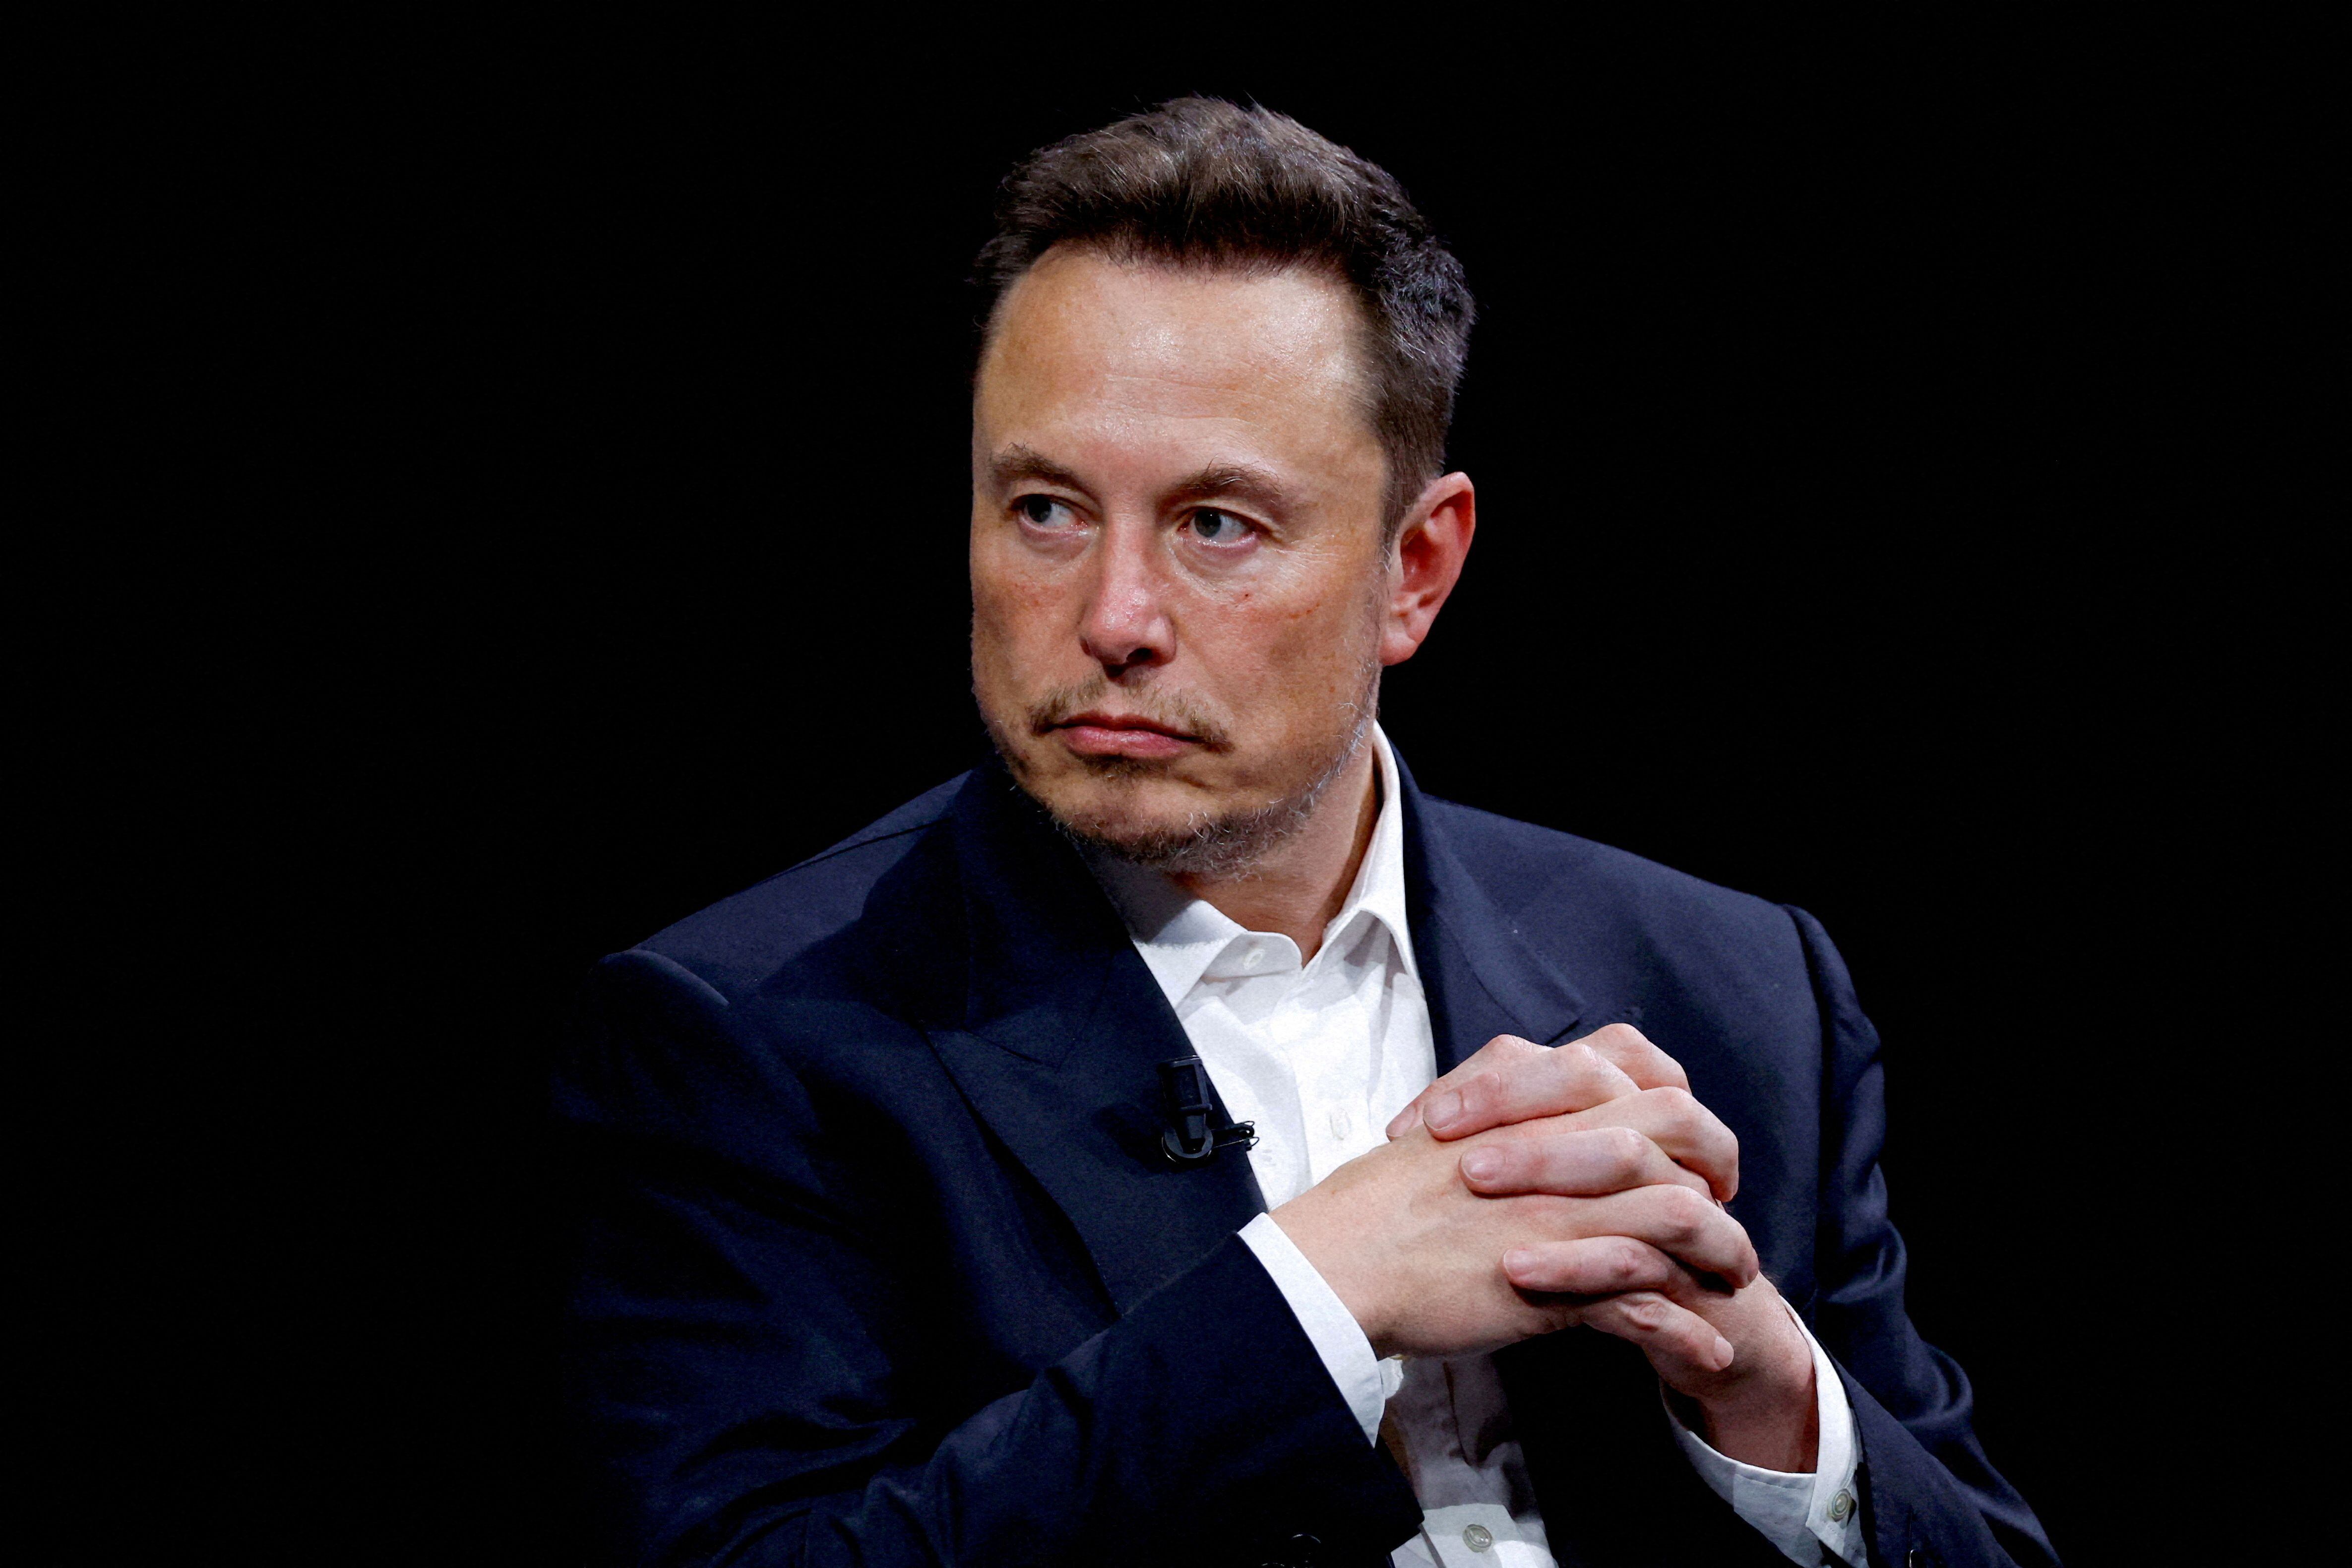 Musk ha sido protagonista de agudas polémicas en las últimas semanas. (REUTERS/Gonzalo Fuentes)